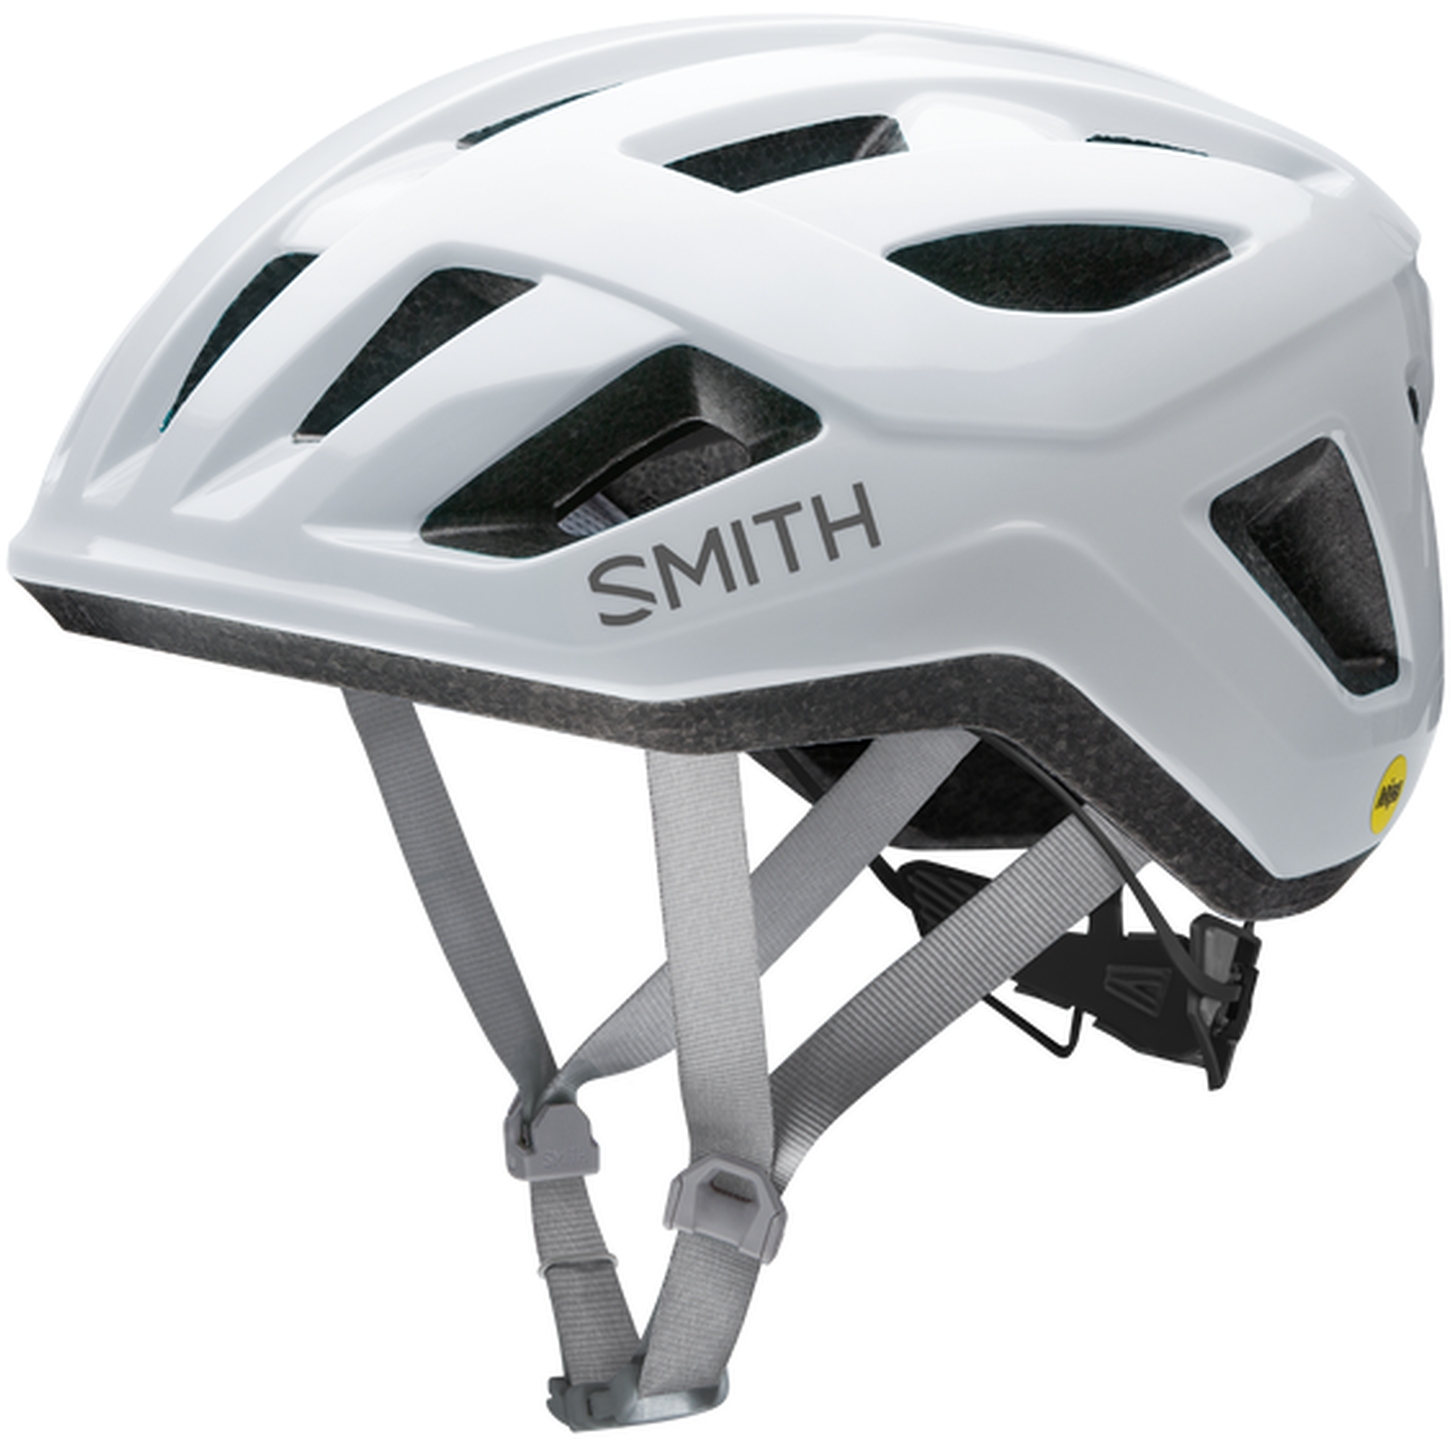 Produktbild von Smith Signal MIPS Helm - white